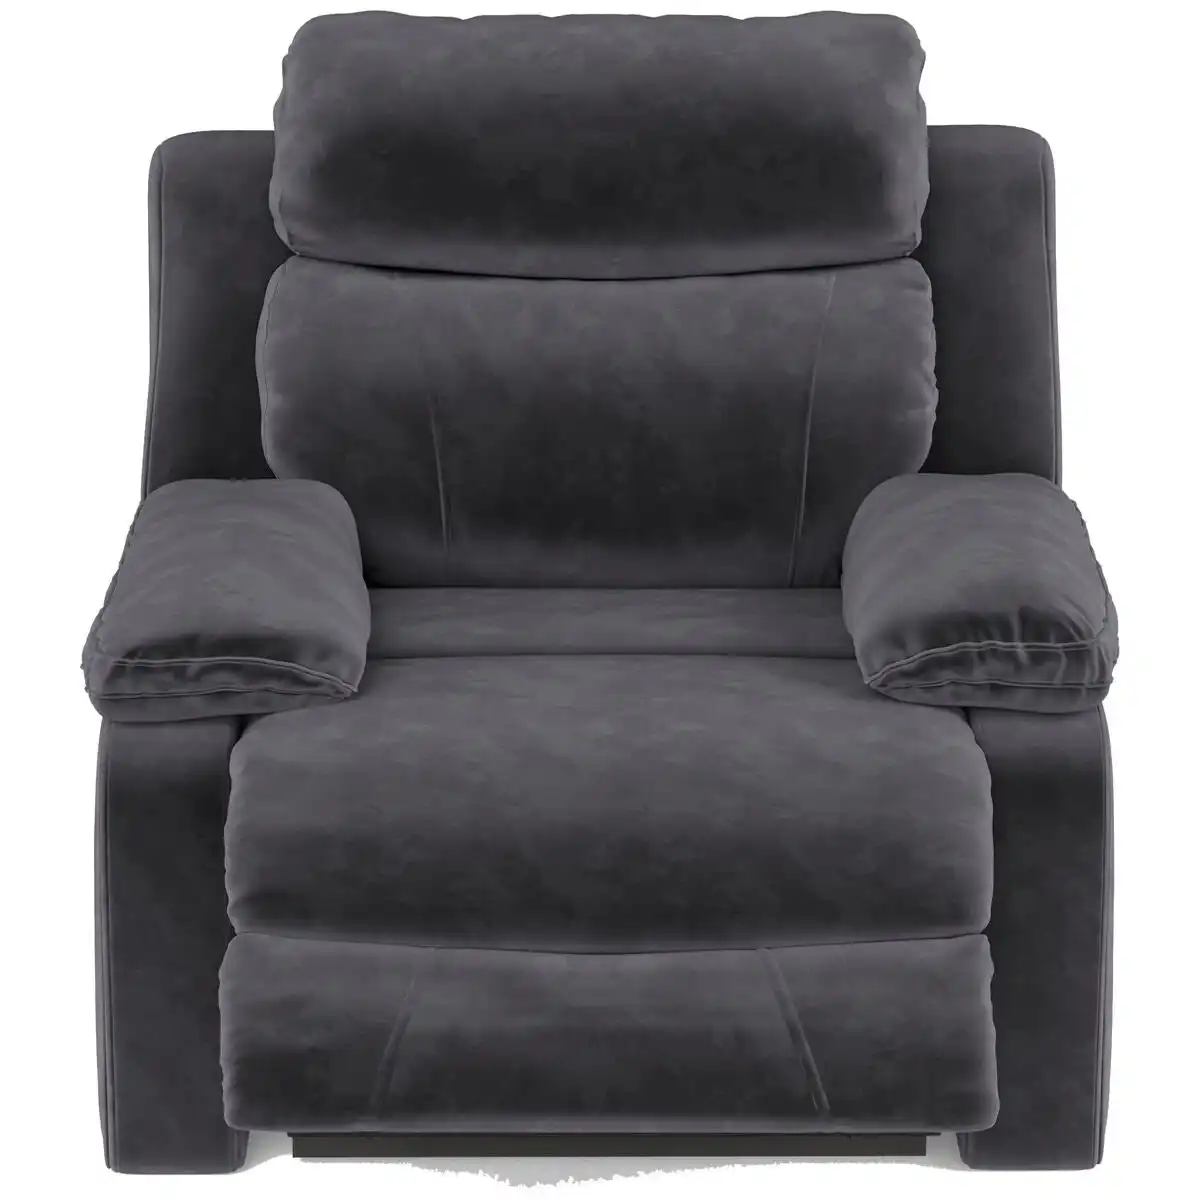 Ostro Furniture Ostro Braxton Recliner Chair